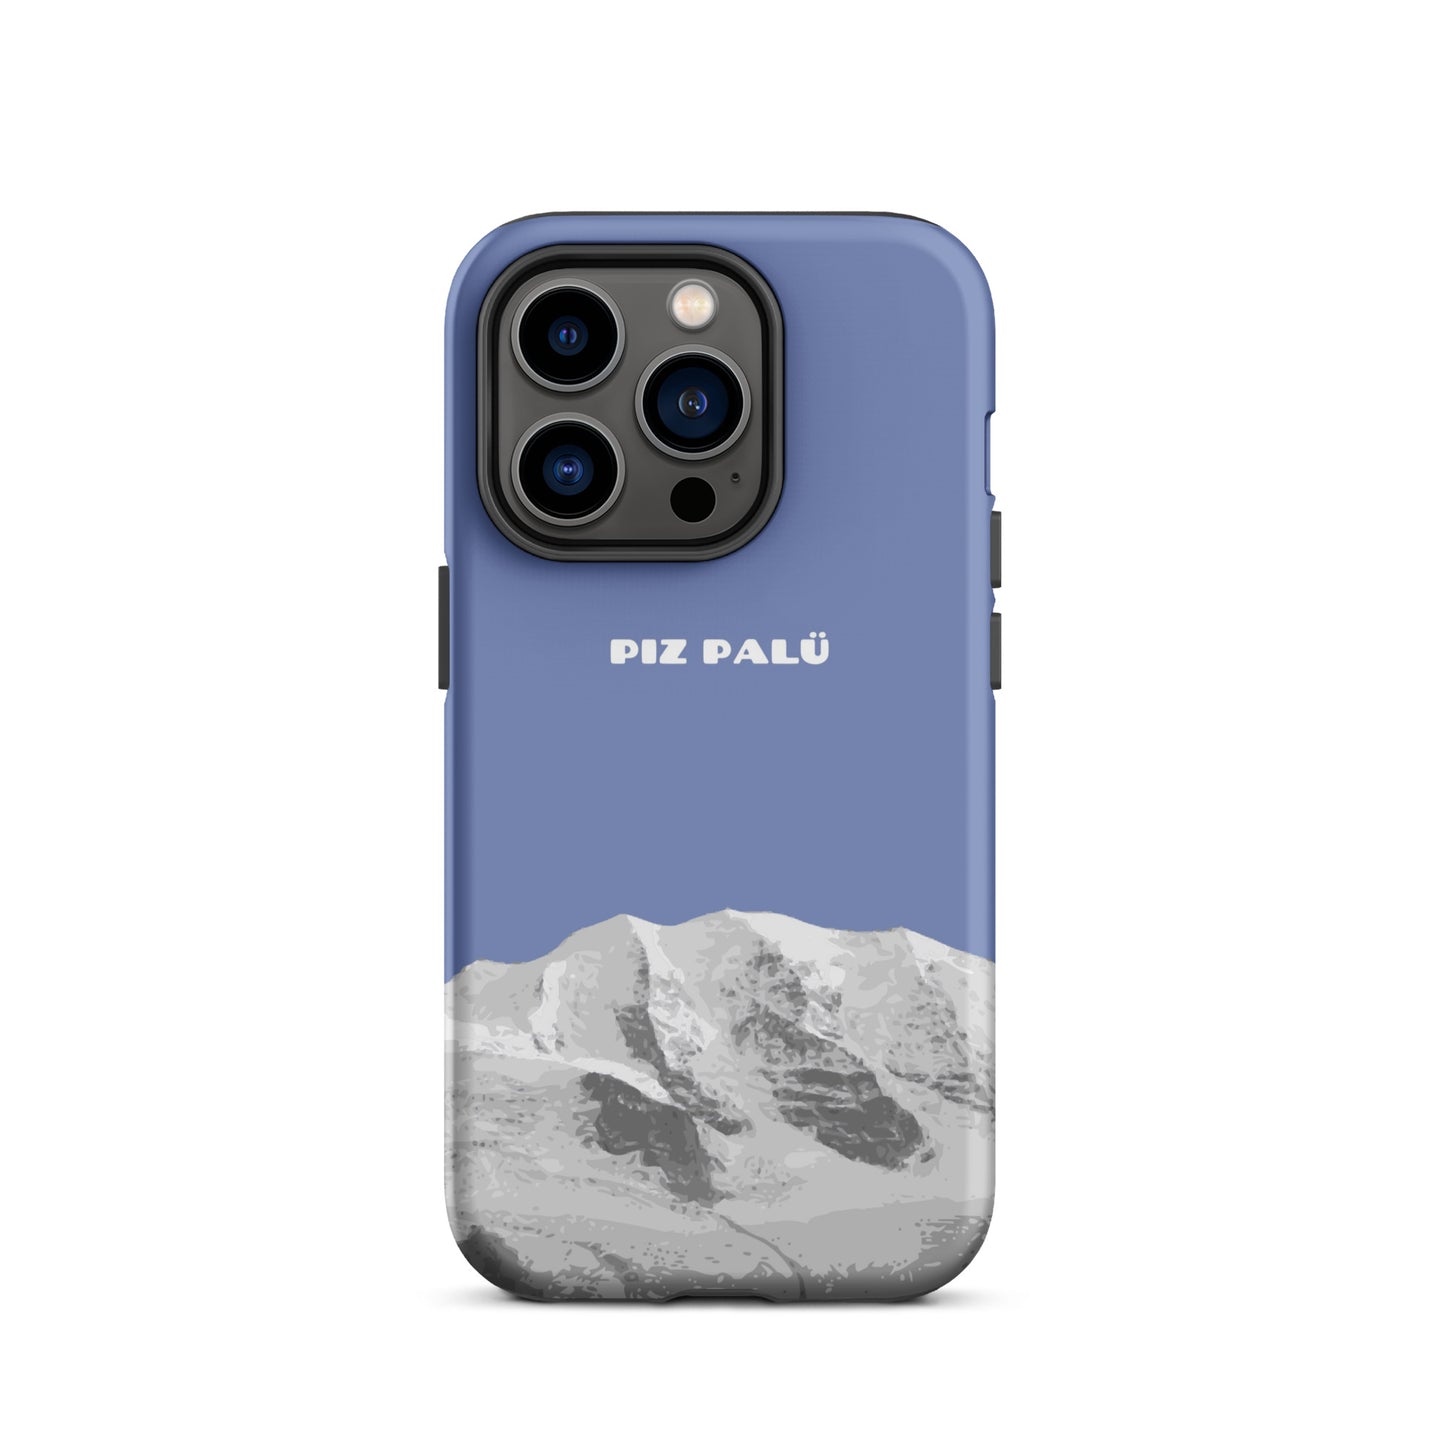 Hülle für das iPhone 14 Pro von Apple in der Farbe Pastellblau, dass den Piz Palü in Graubünden zeigt.